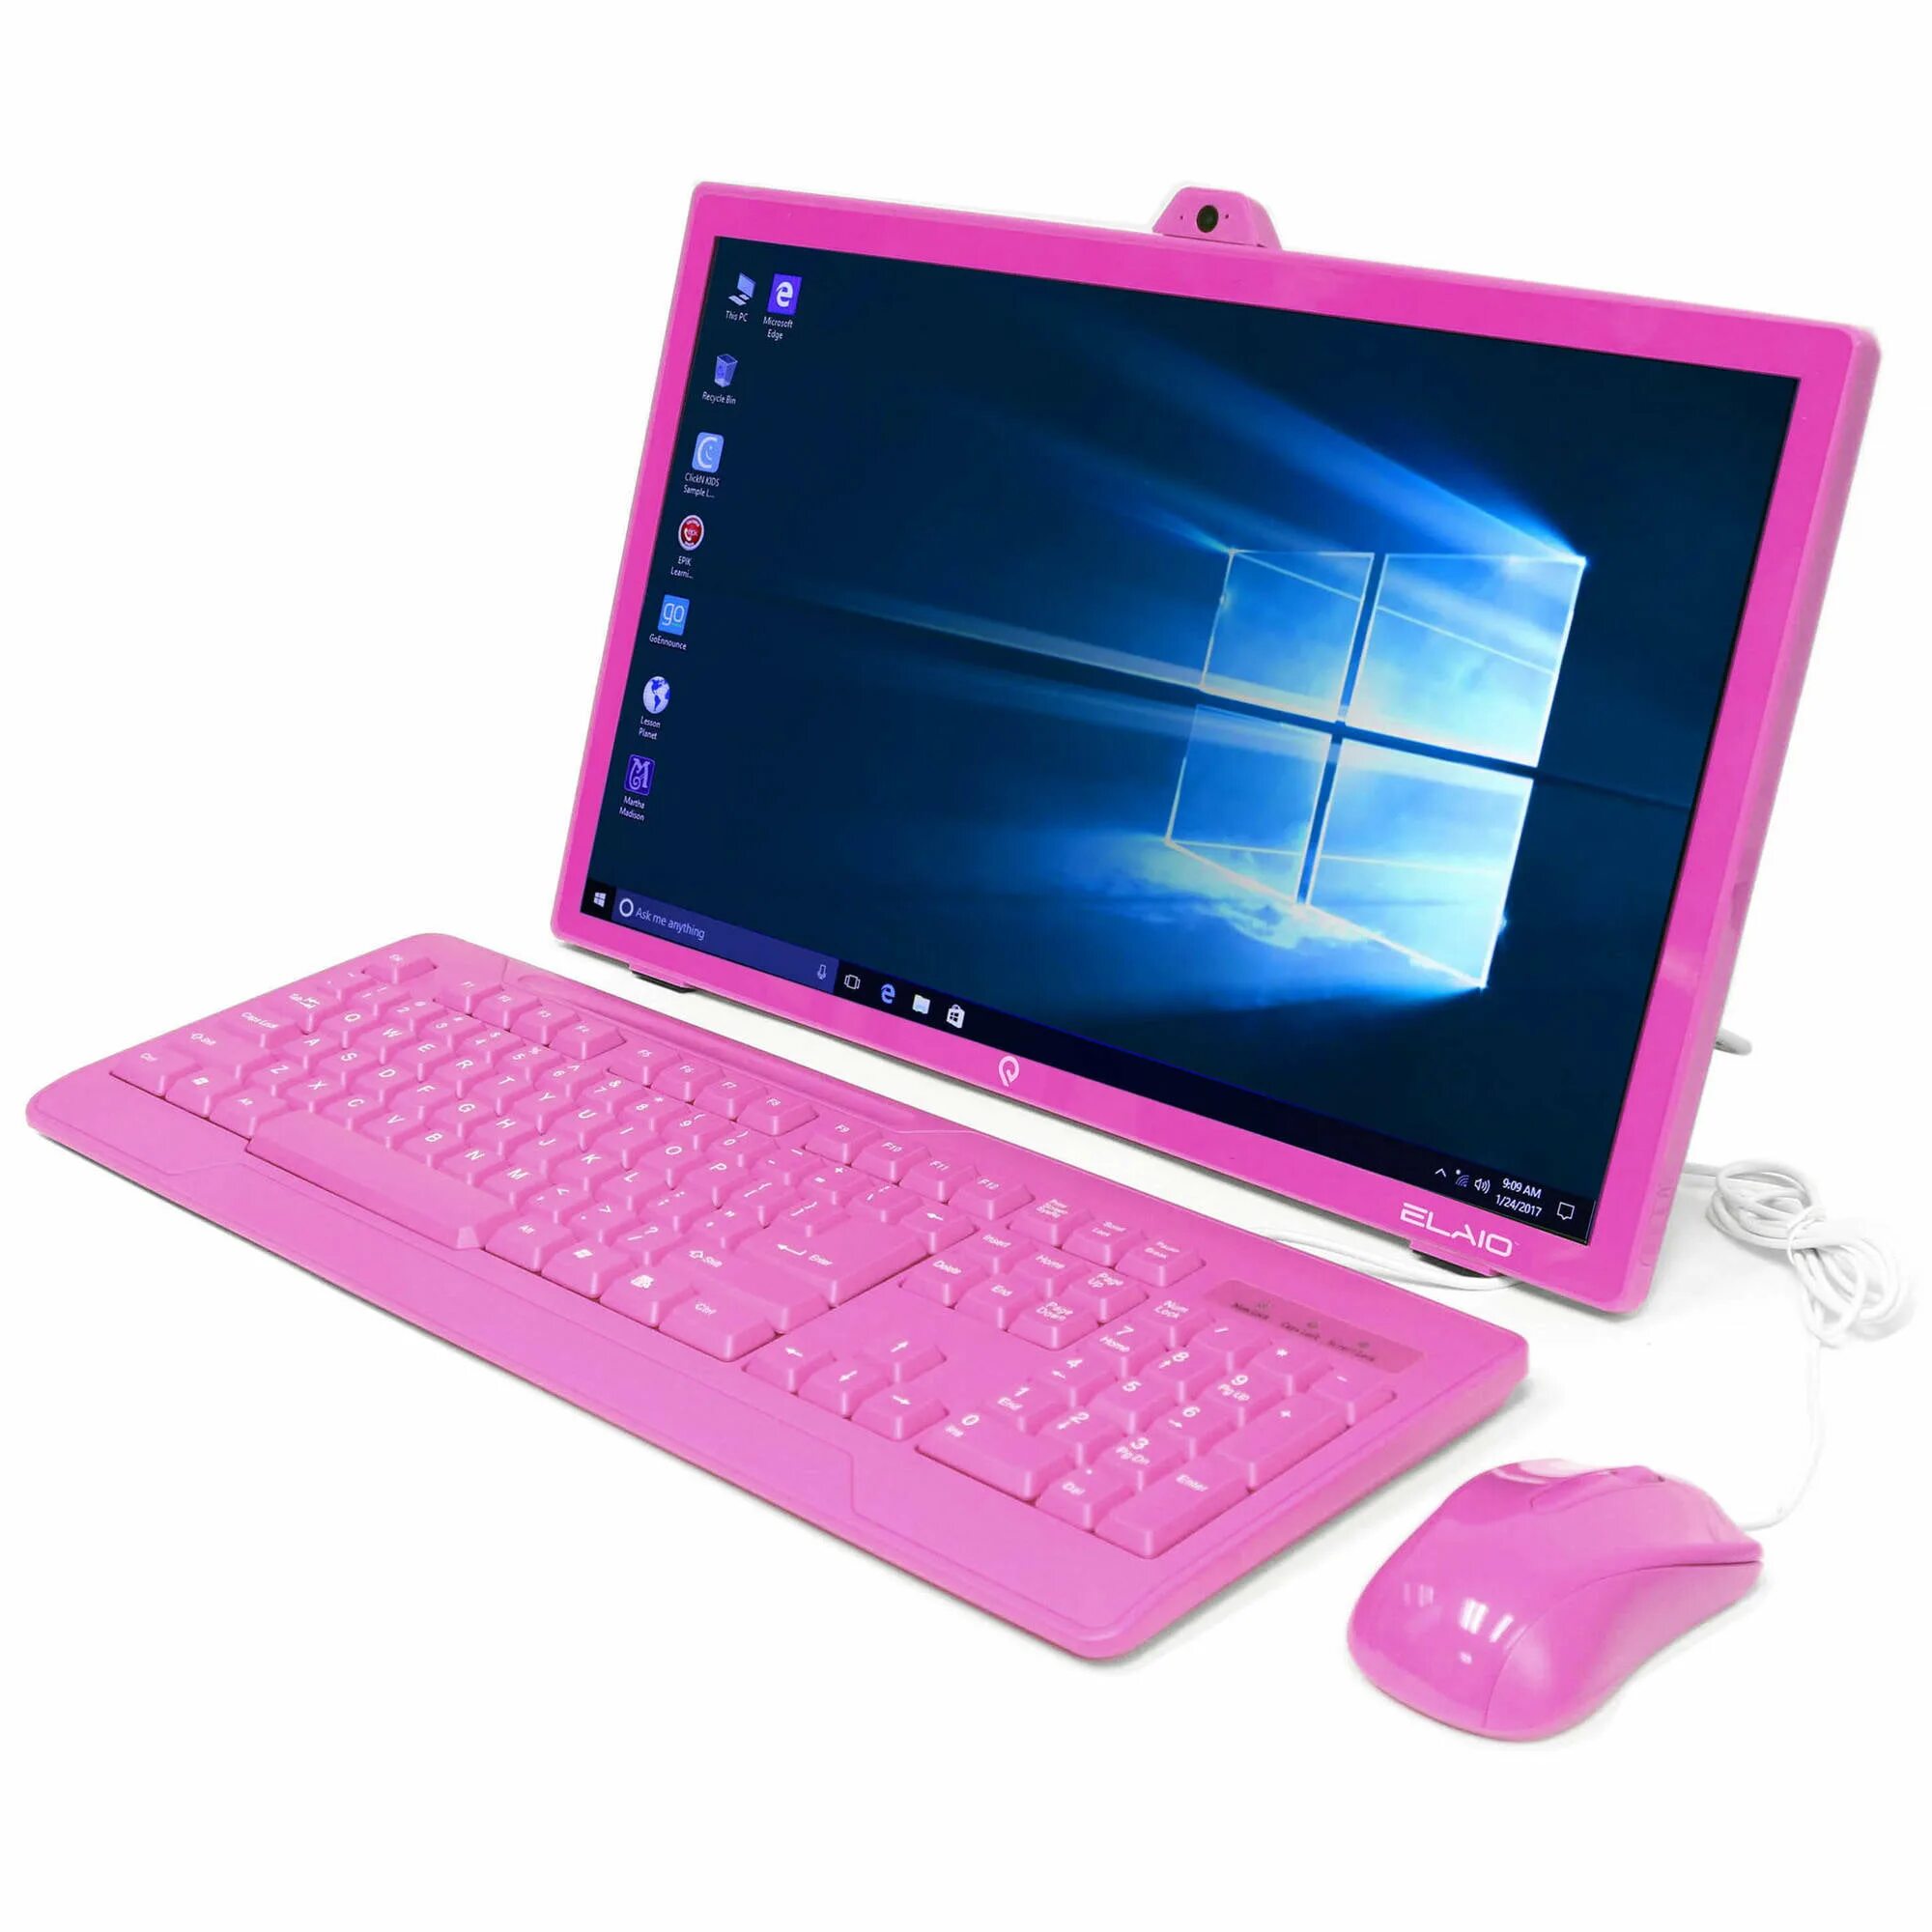 Ноутбук для девочек. Компьютер для детей. Компьютер для девочек. Розовый компьютер. Купить ноутбук на озоне недорого